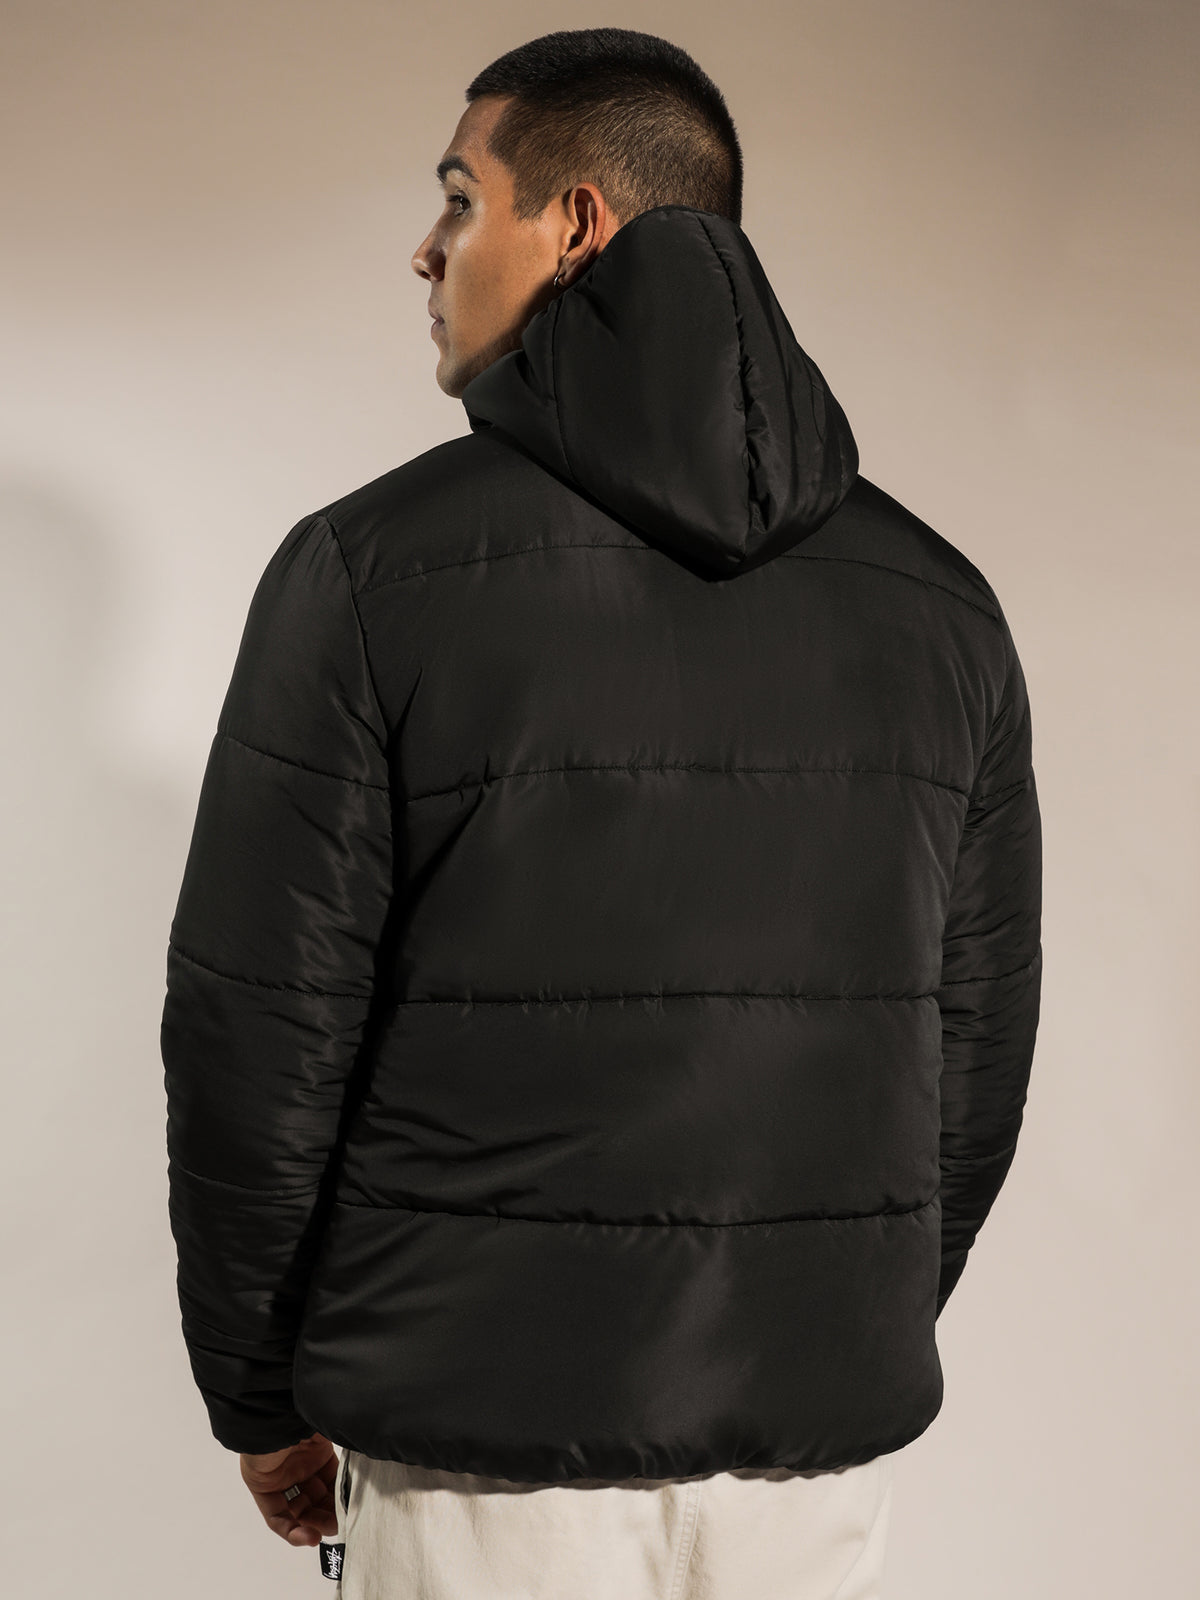 Worldwide Lightweight Puffer Jacket in Black